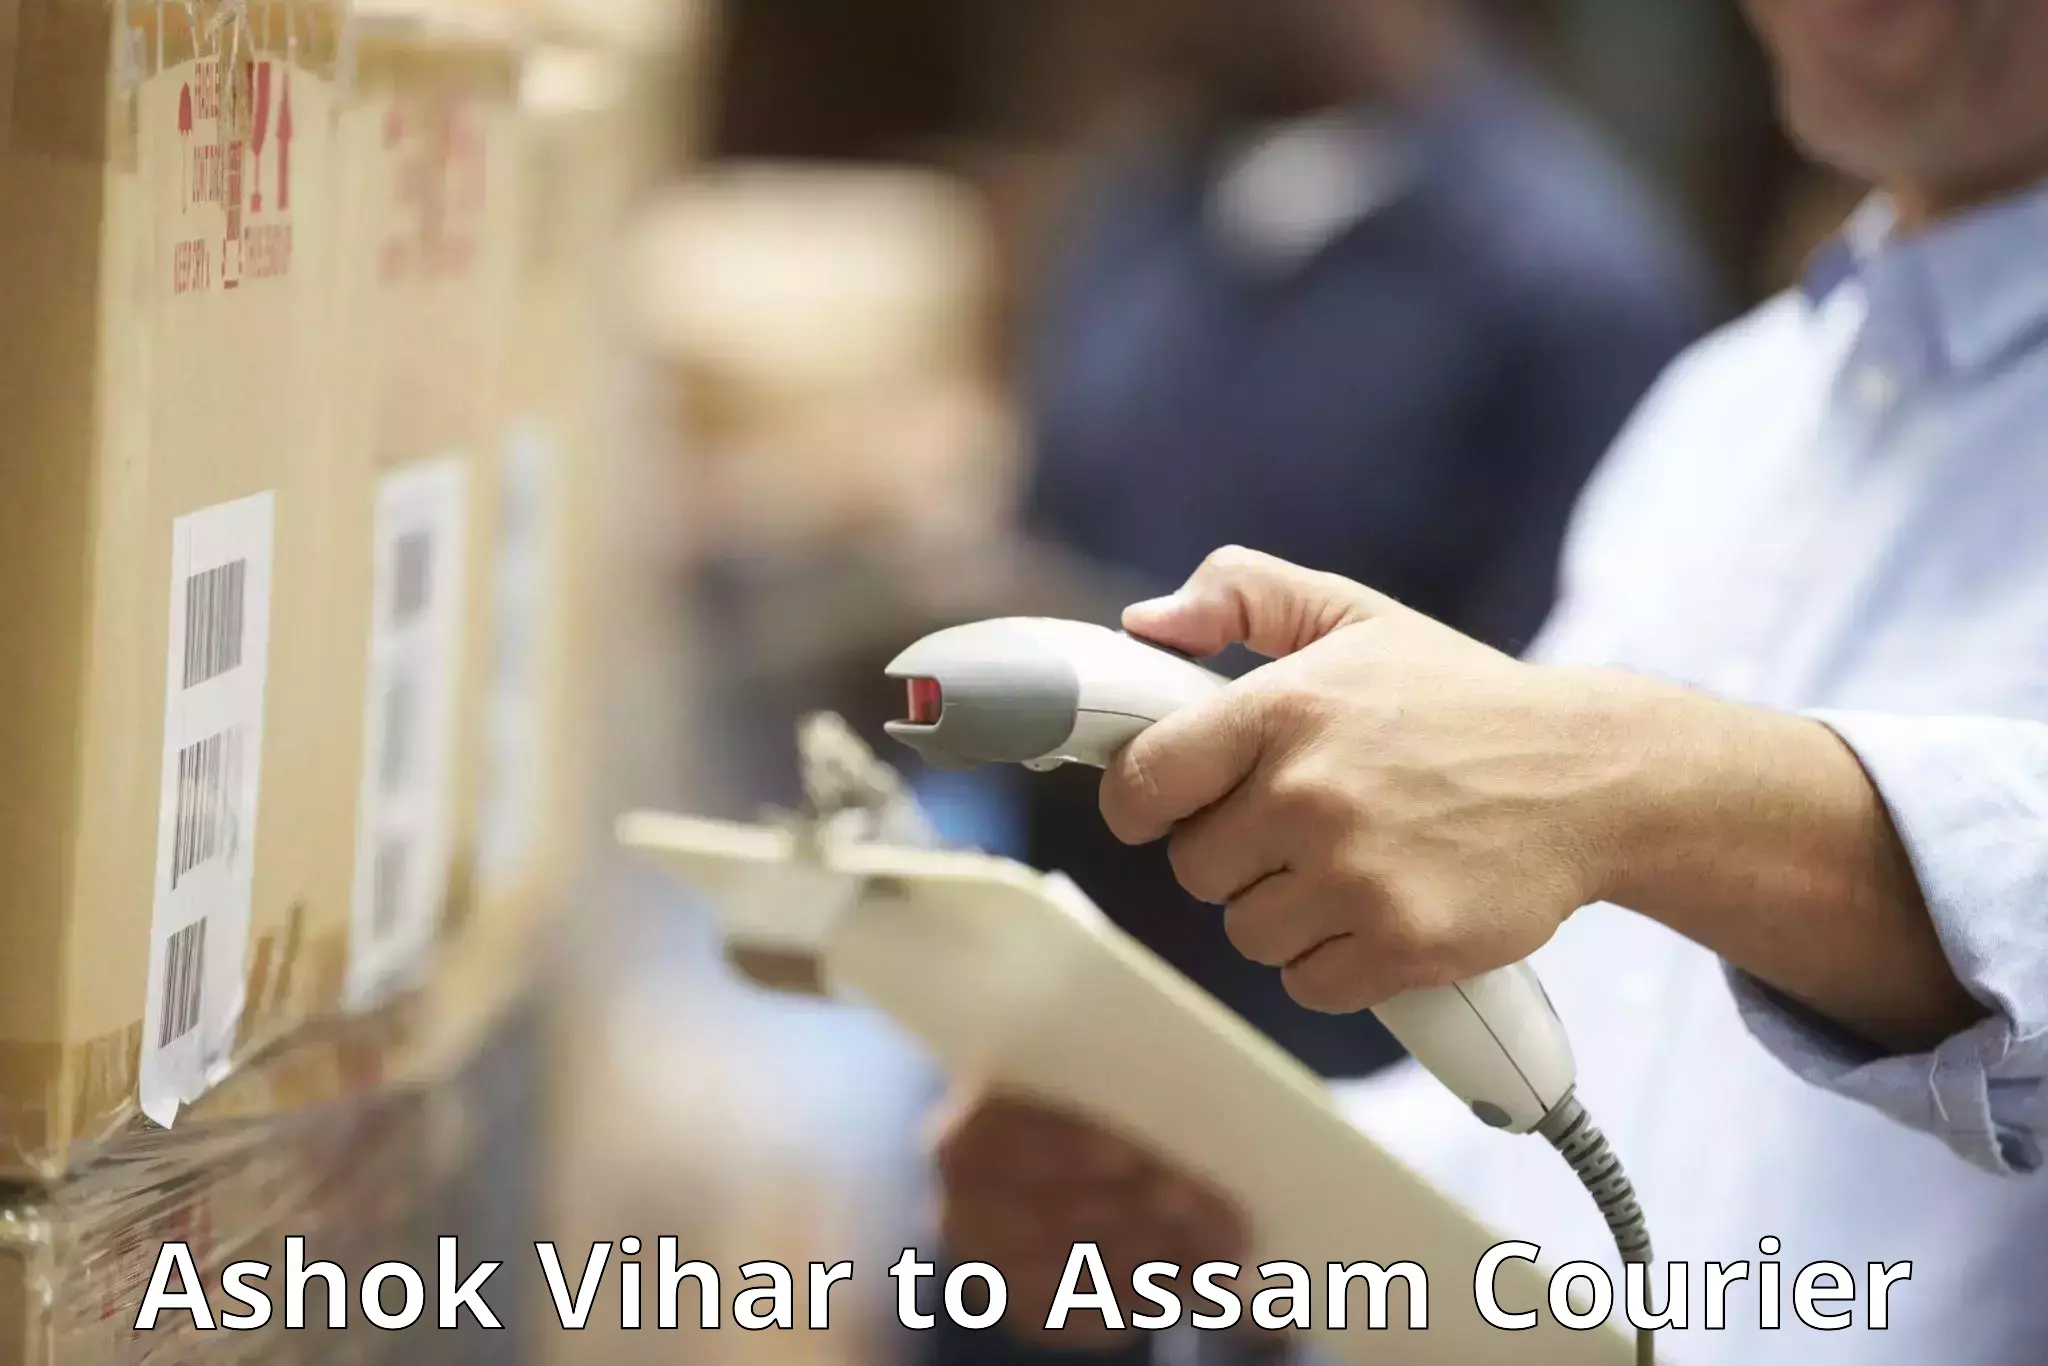 Luggage delivery estimate Ashok Vihar to IIIT Guwahati